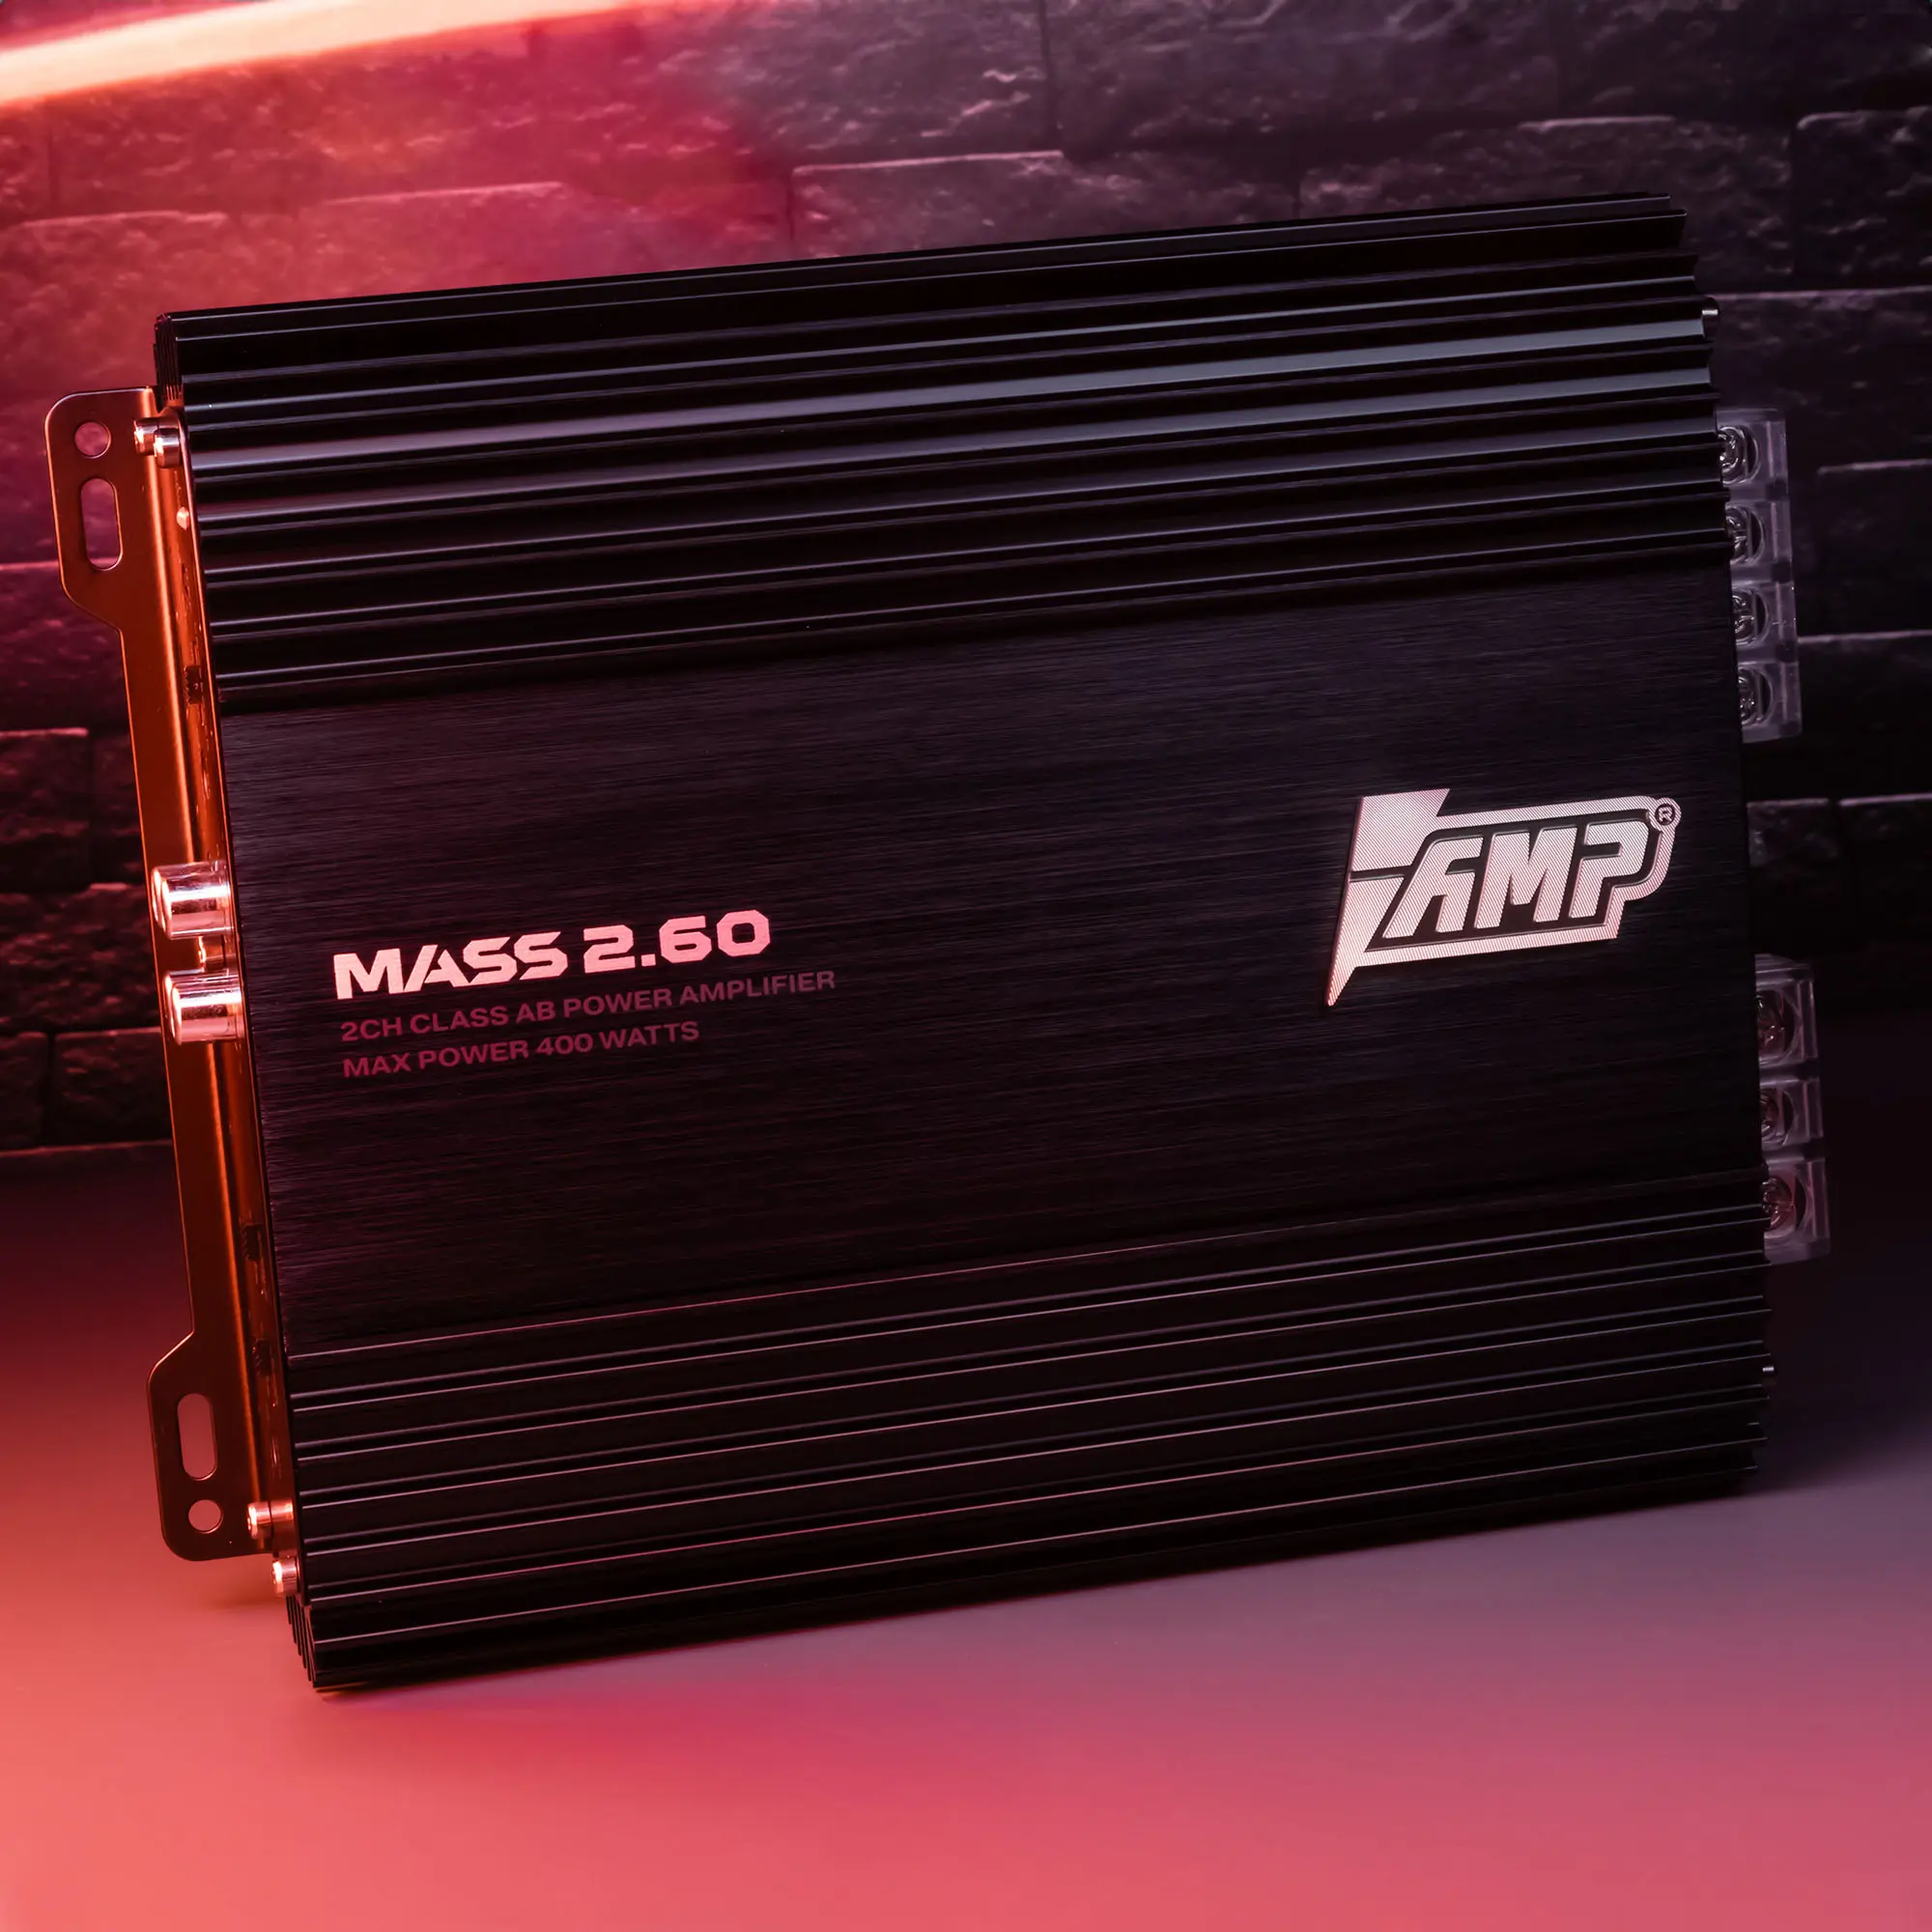 Усилитель AMP MASS 2.60 купить в интернет магазине AMPGROUP.  Усилитель AMP MASS 2.60   цены, большой каталог, новинки.
